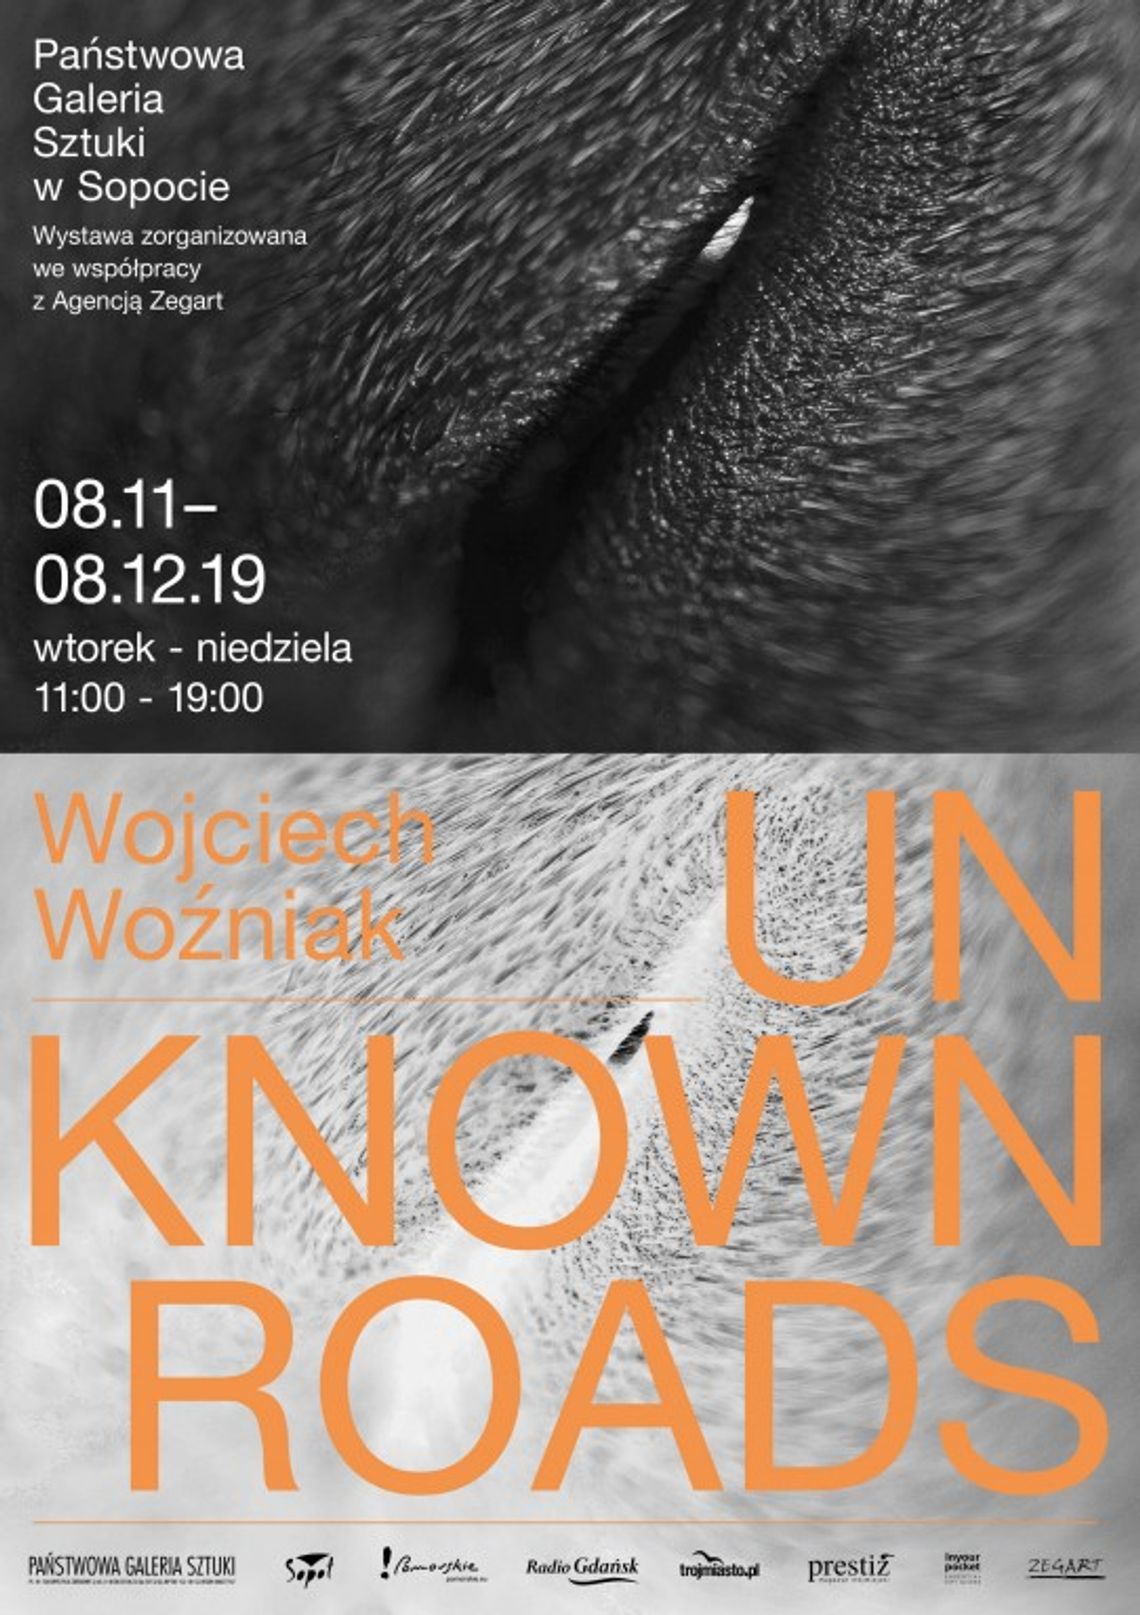 Wojciech Woźniak: Unknown roads - wystawa